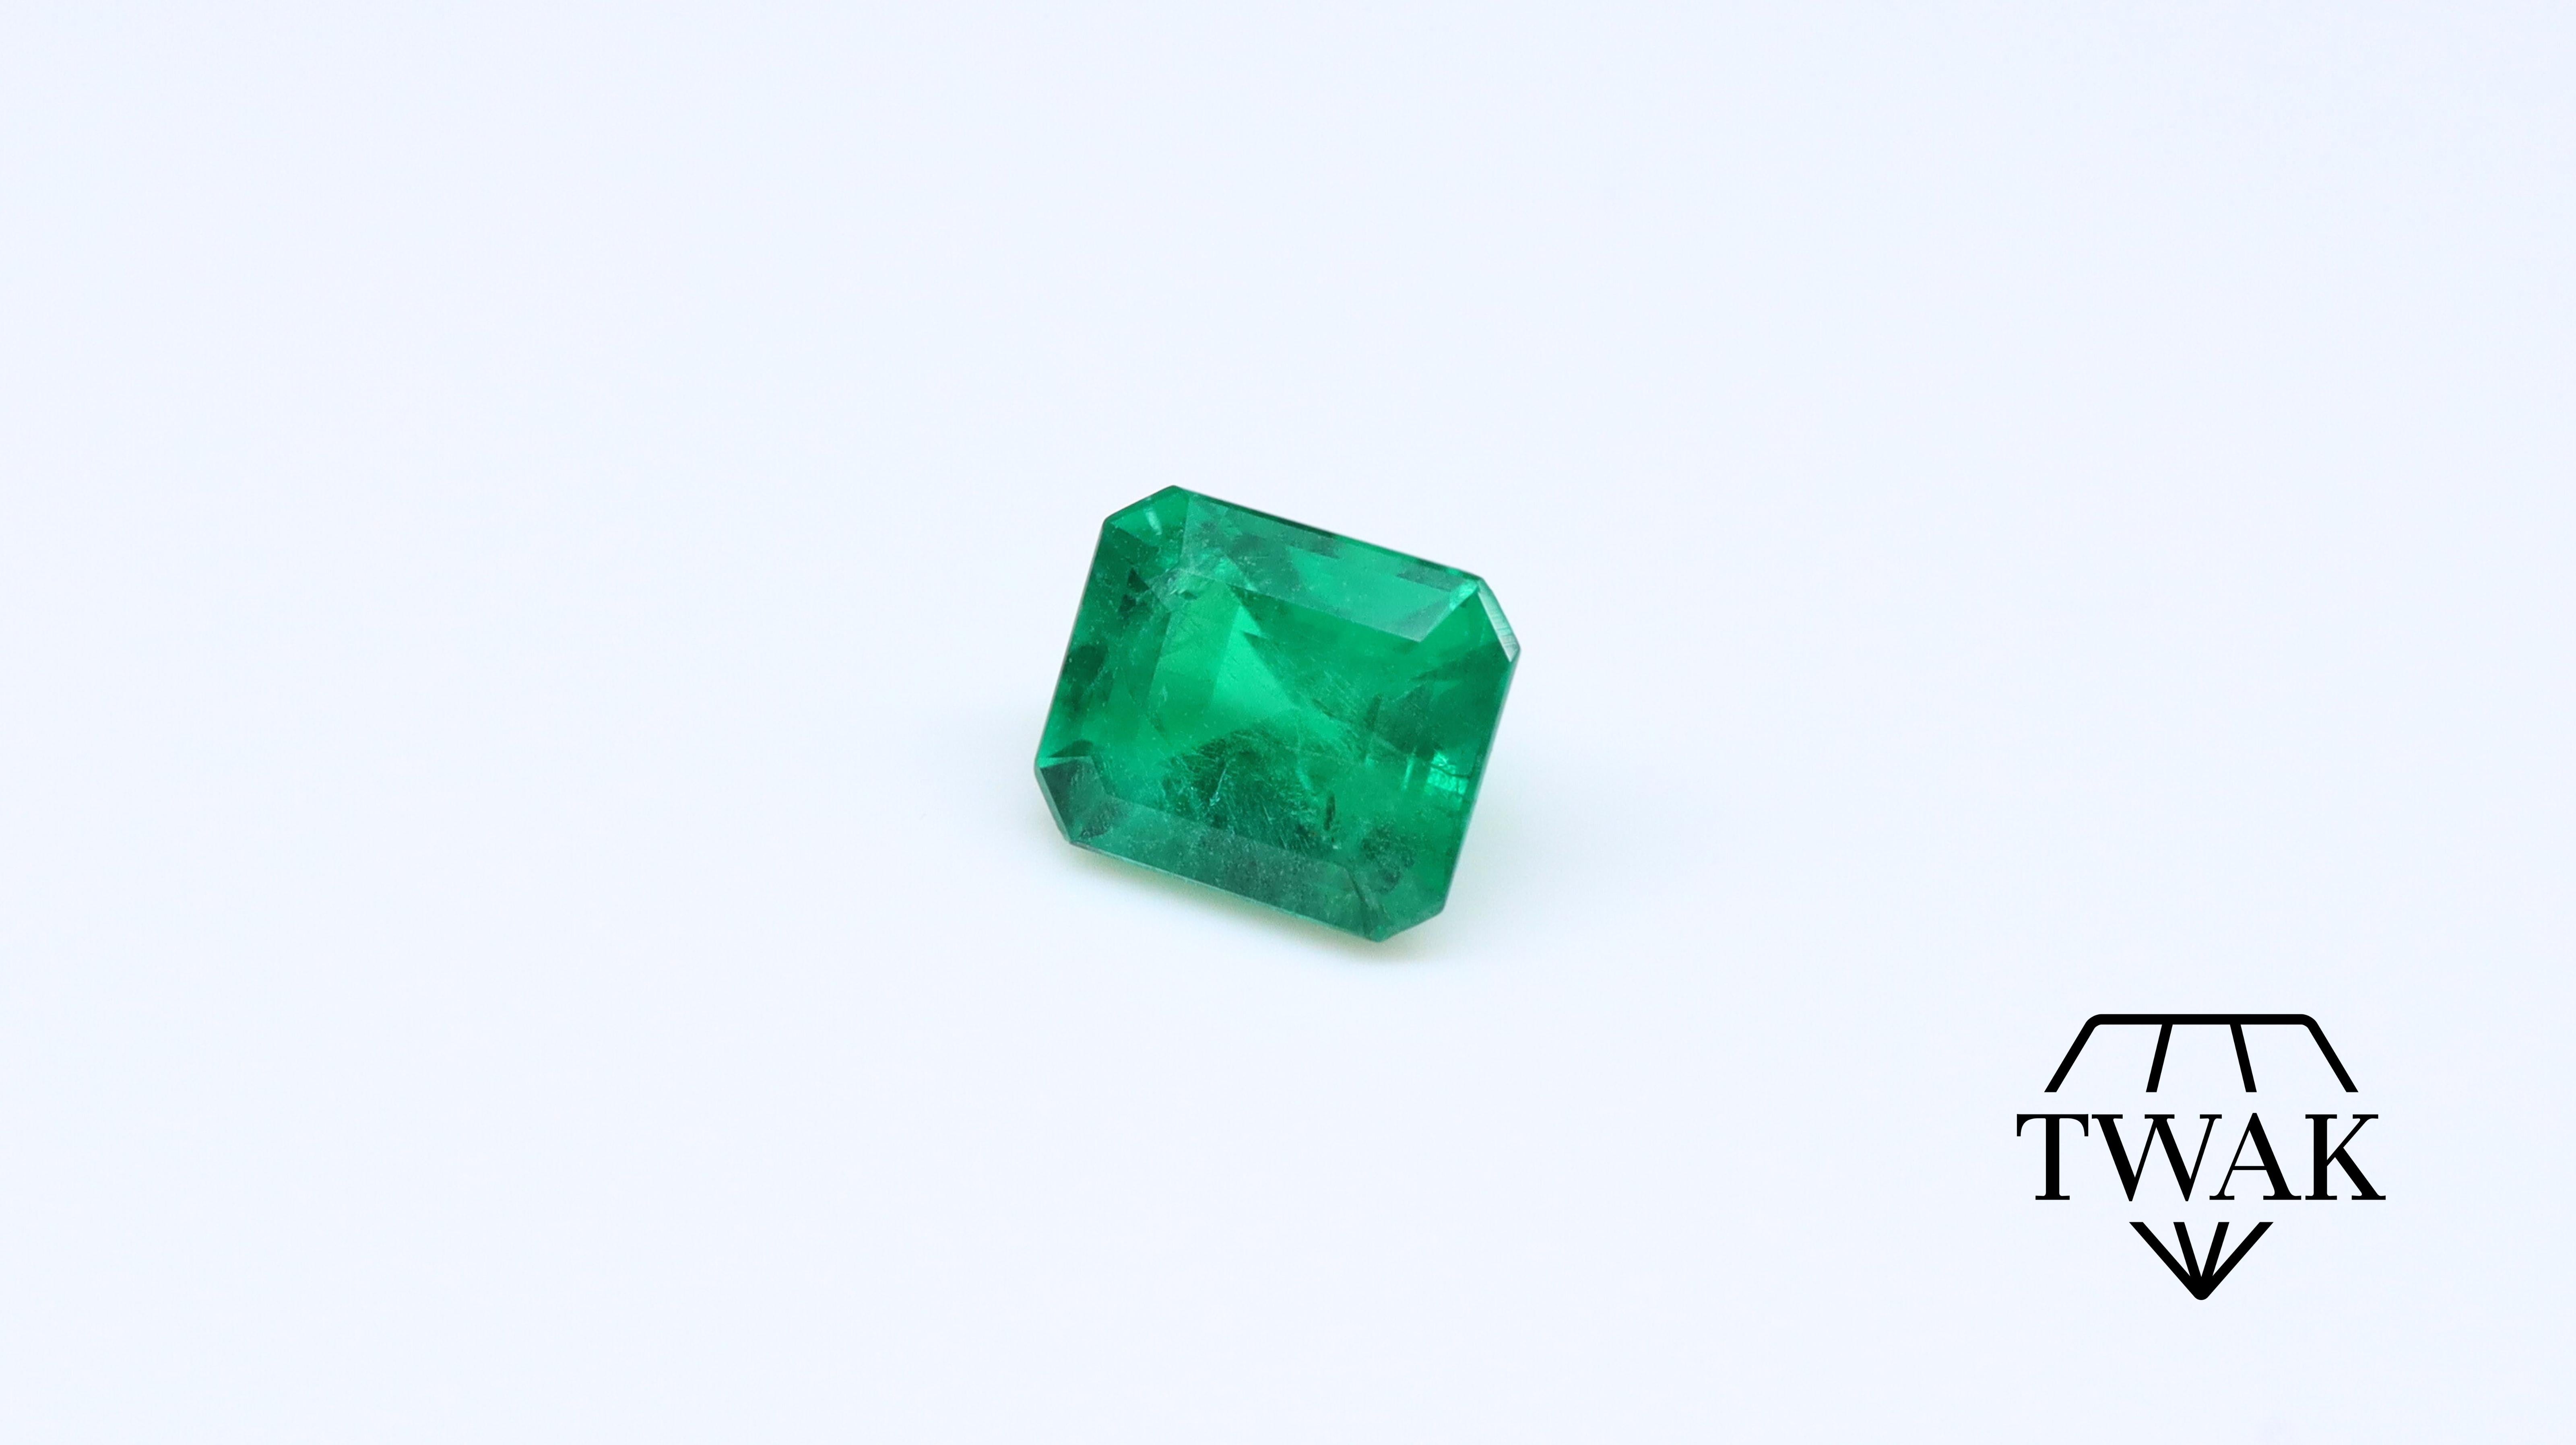 Une belle émeraude avec une couleur, un cristal et une saturation excellents.

Détails et description :
Dimensions : 5,67 x 4,73 x 3,94 mm : 5,67 x 4,73 x 3,94 mm
Poids : 0,71ct
Couleur : Vert vif 
Traitement : Huile

Les émeraudes sont des pierres